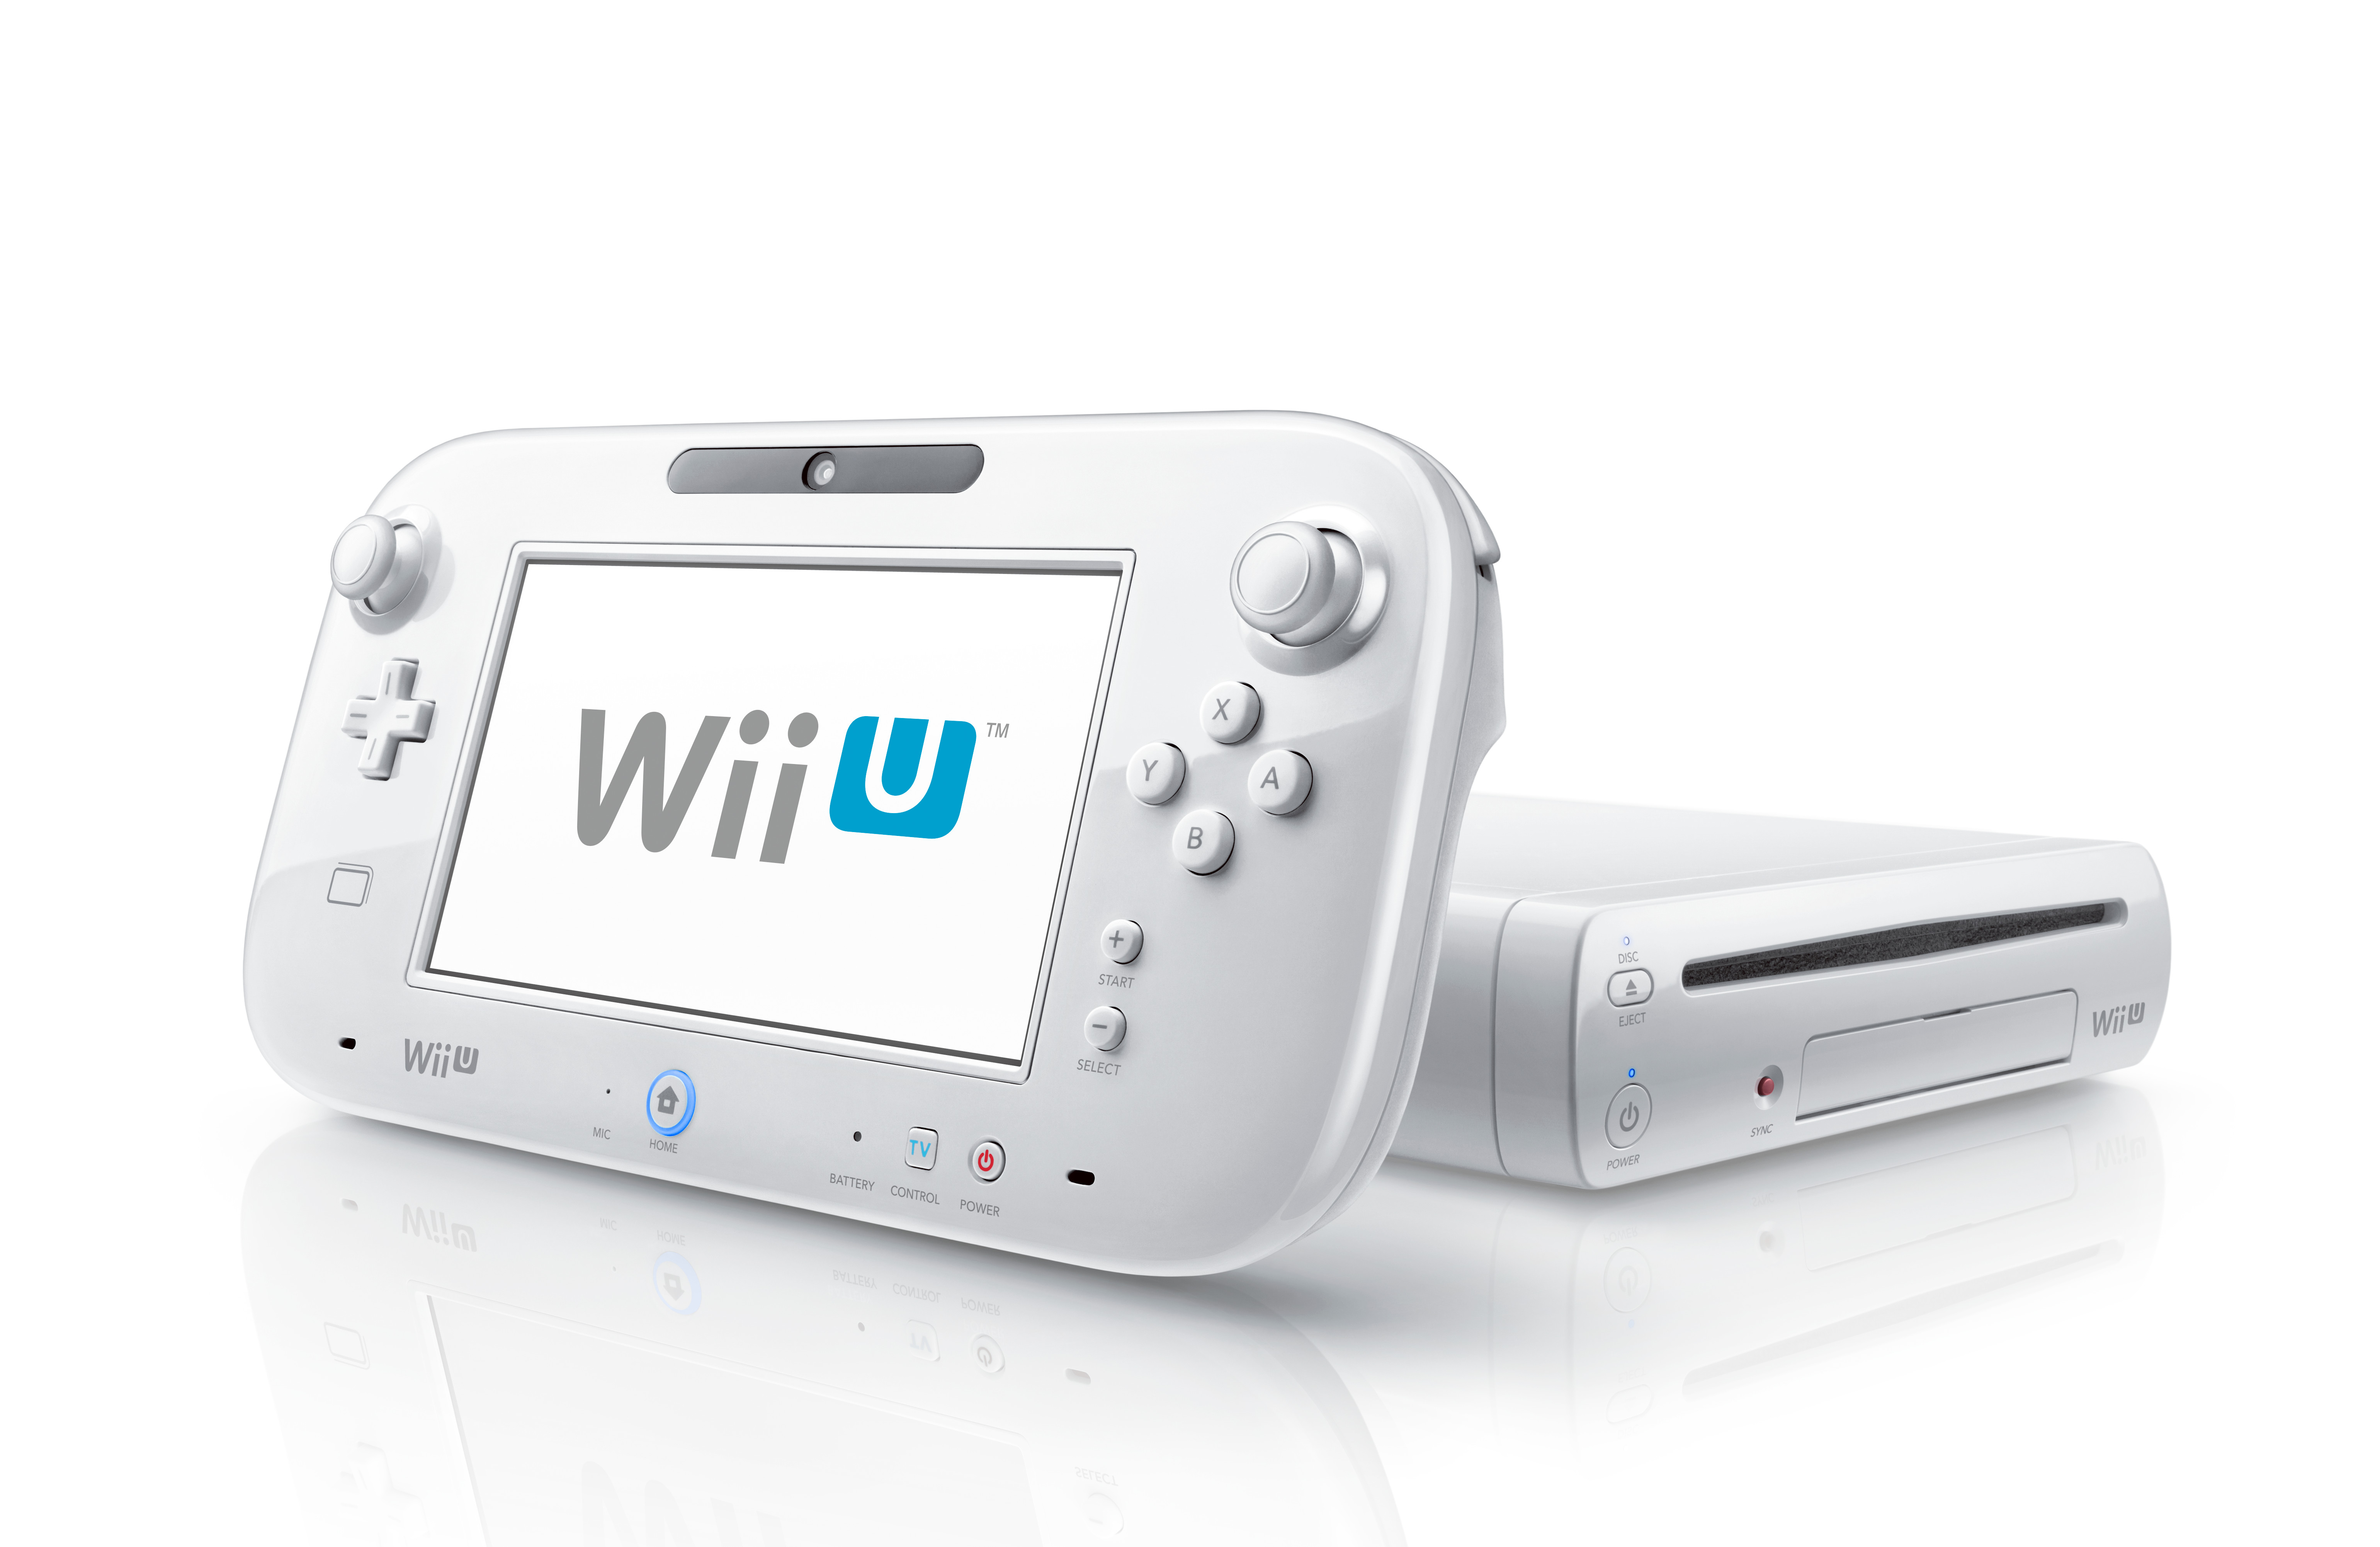 Wii U Basic with GamePad